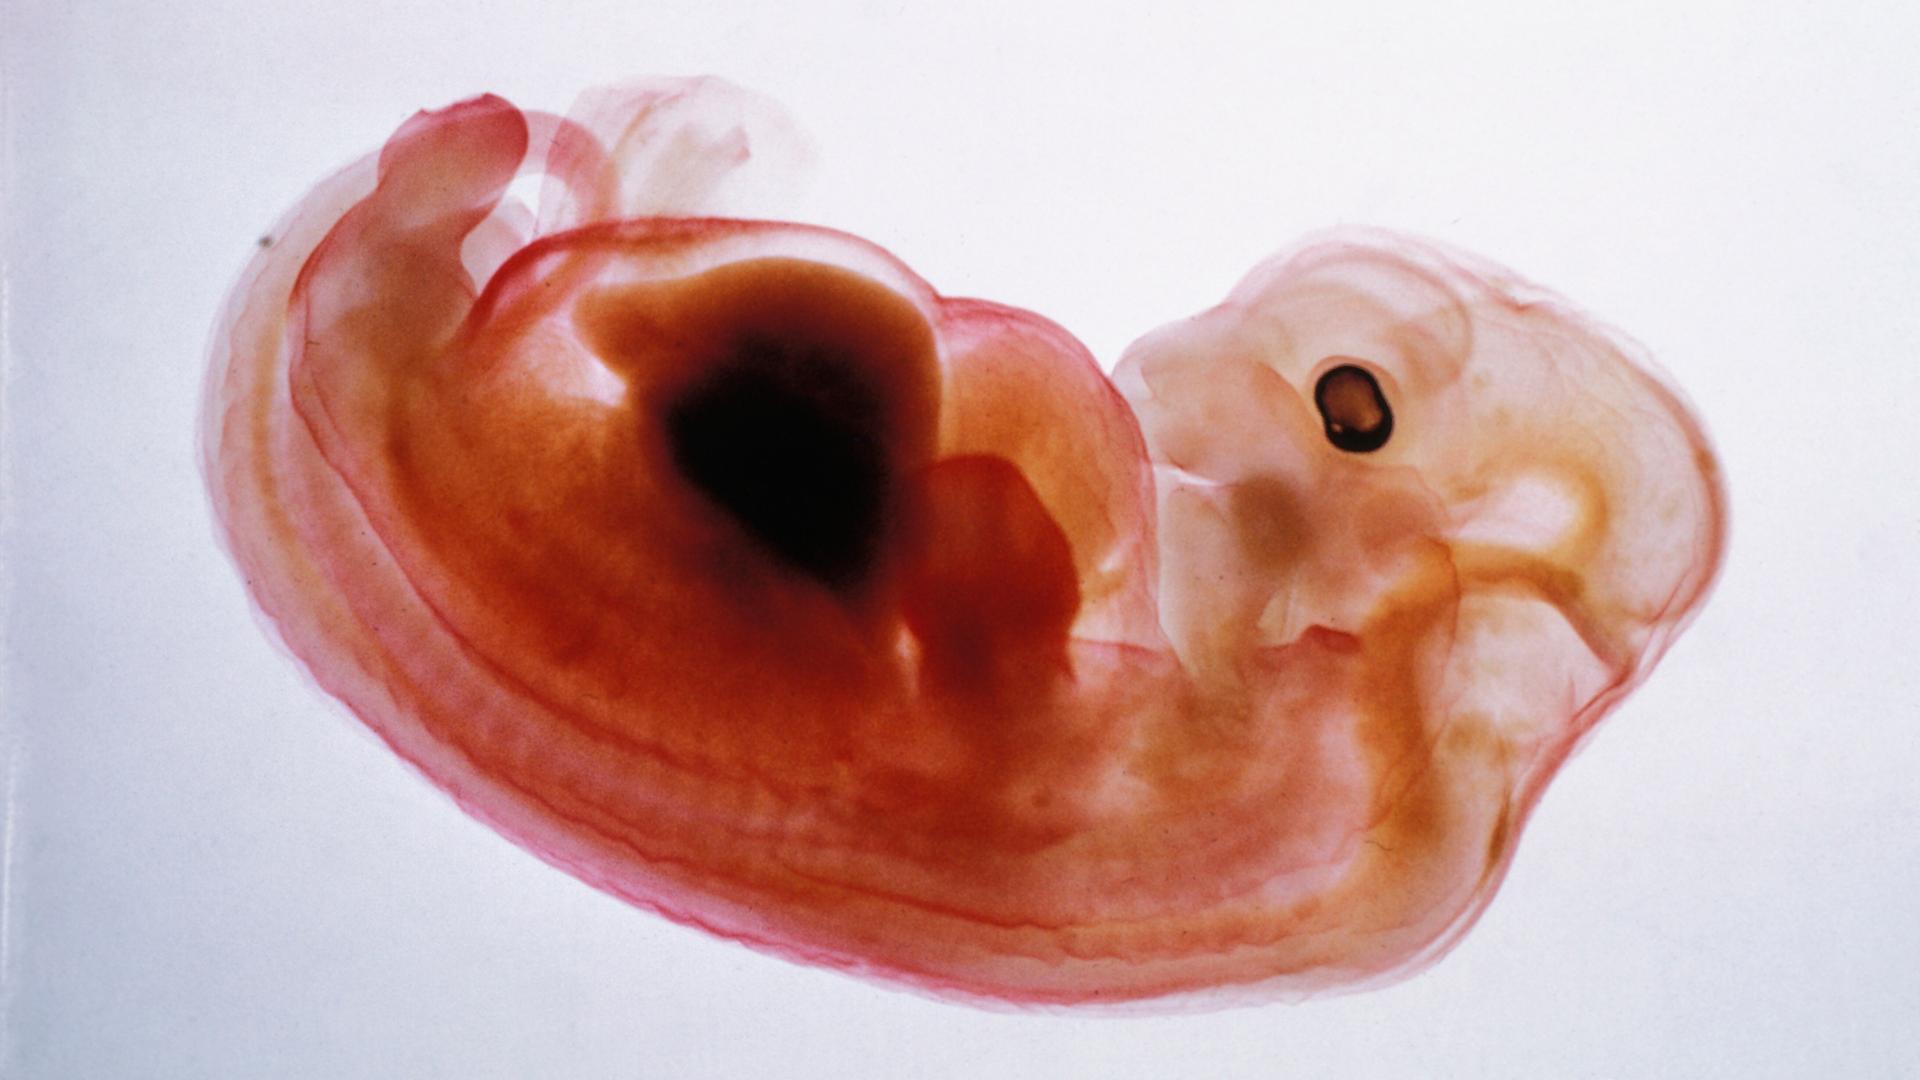 Schweineembryo mit menschlichen Zellen.